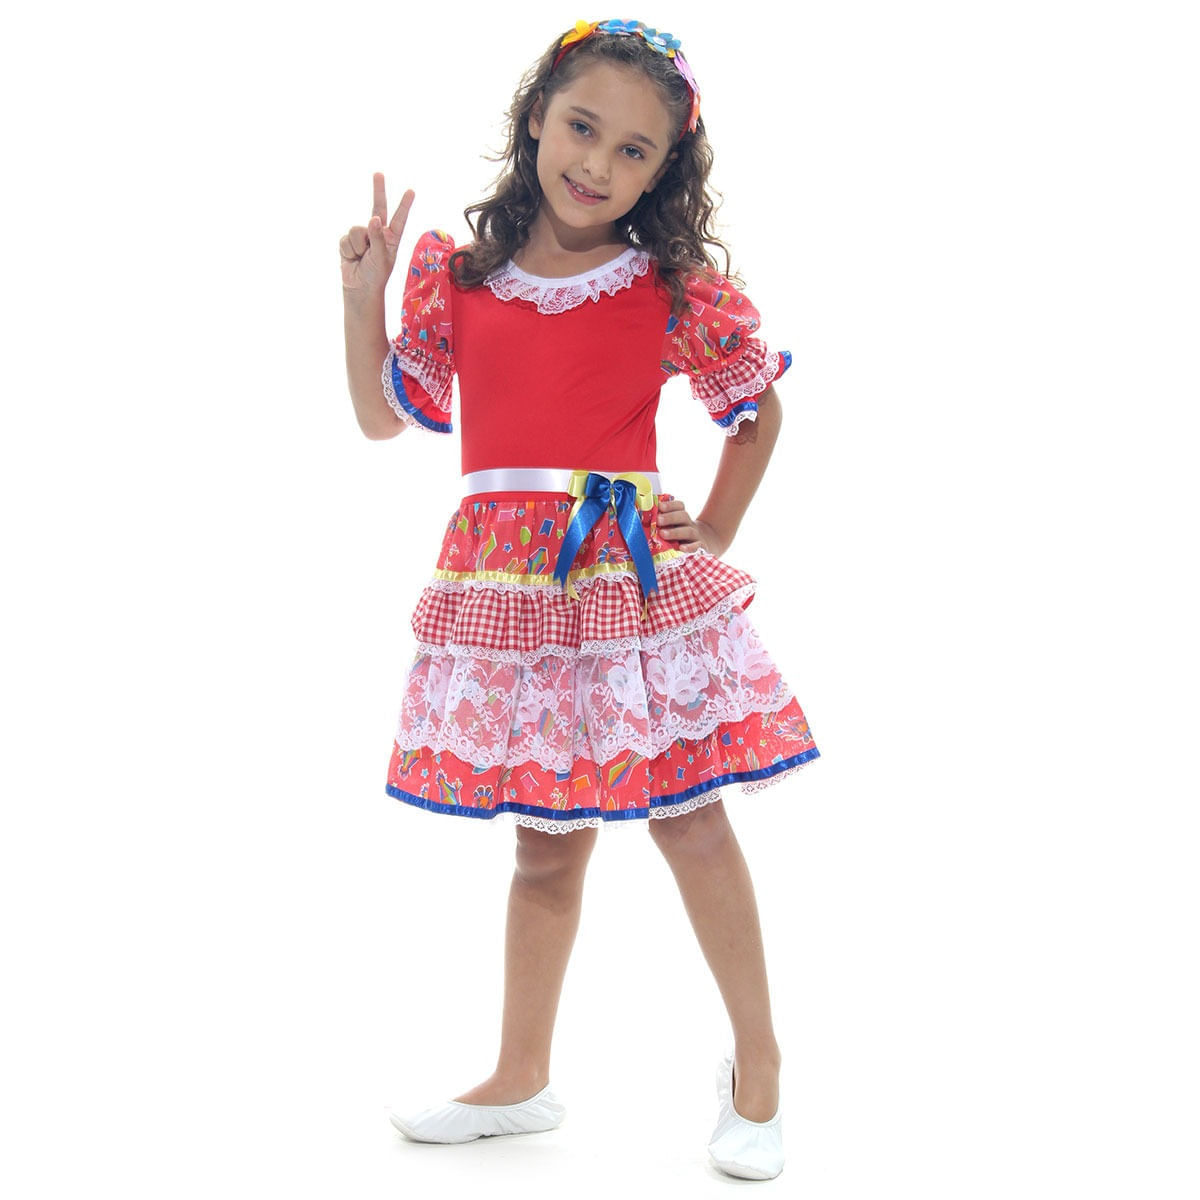 Fantasia Caipira Chic Vermelha Vestido Infantil com Tiara - Festa Junina P / UNICA